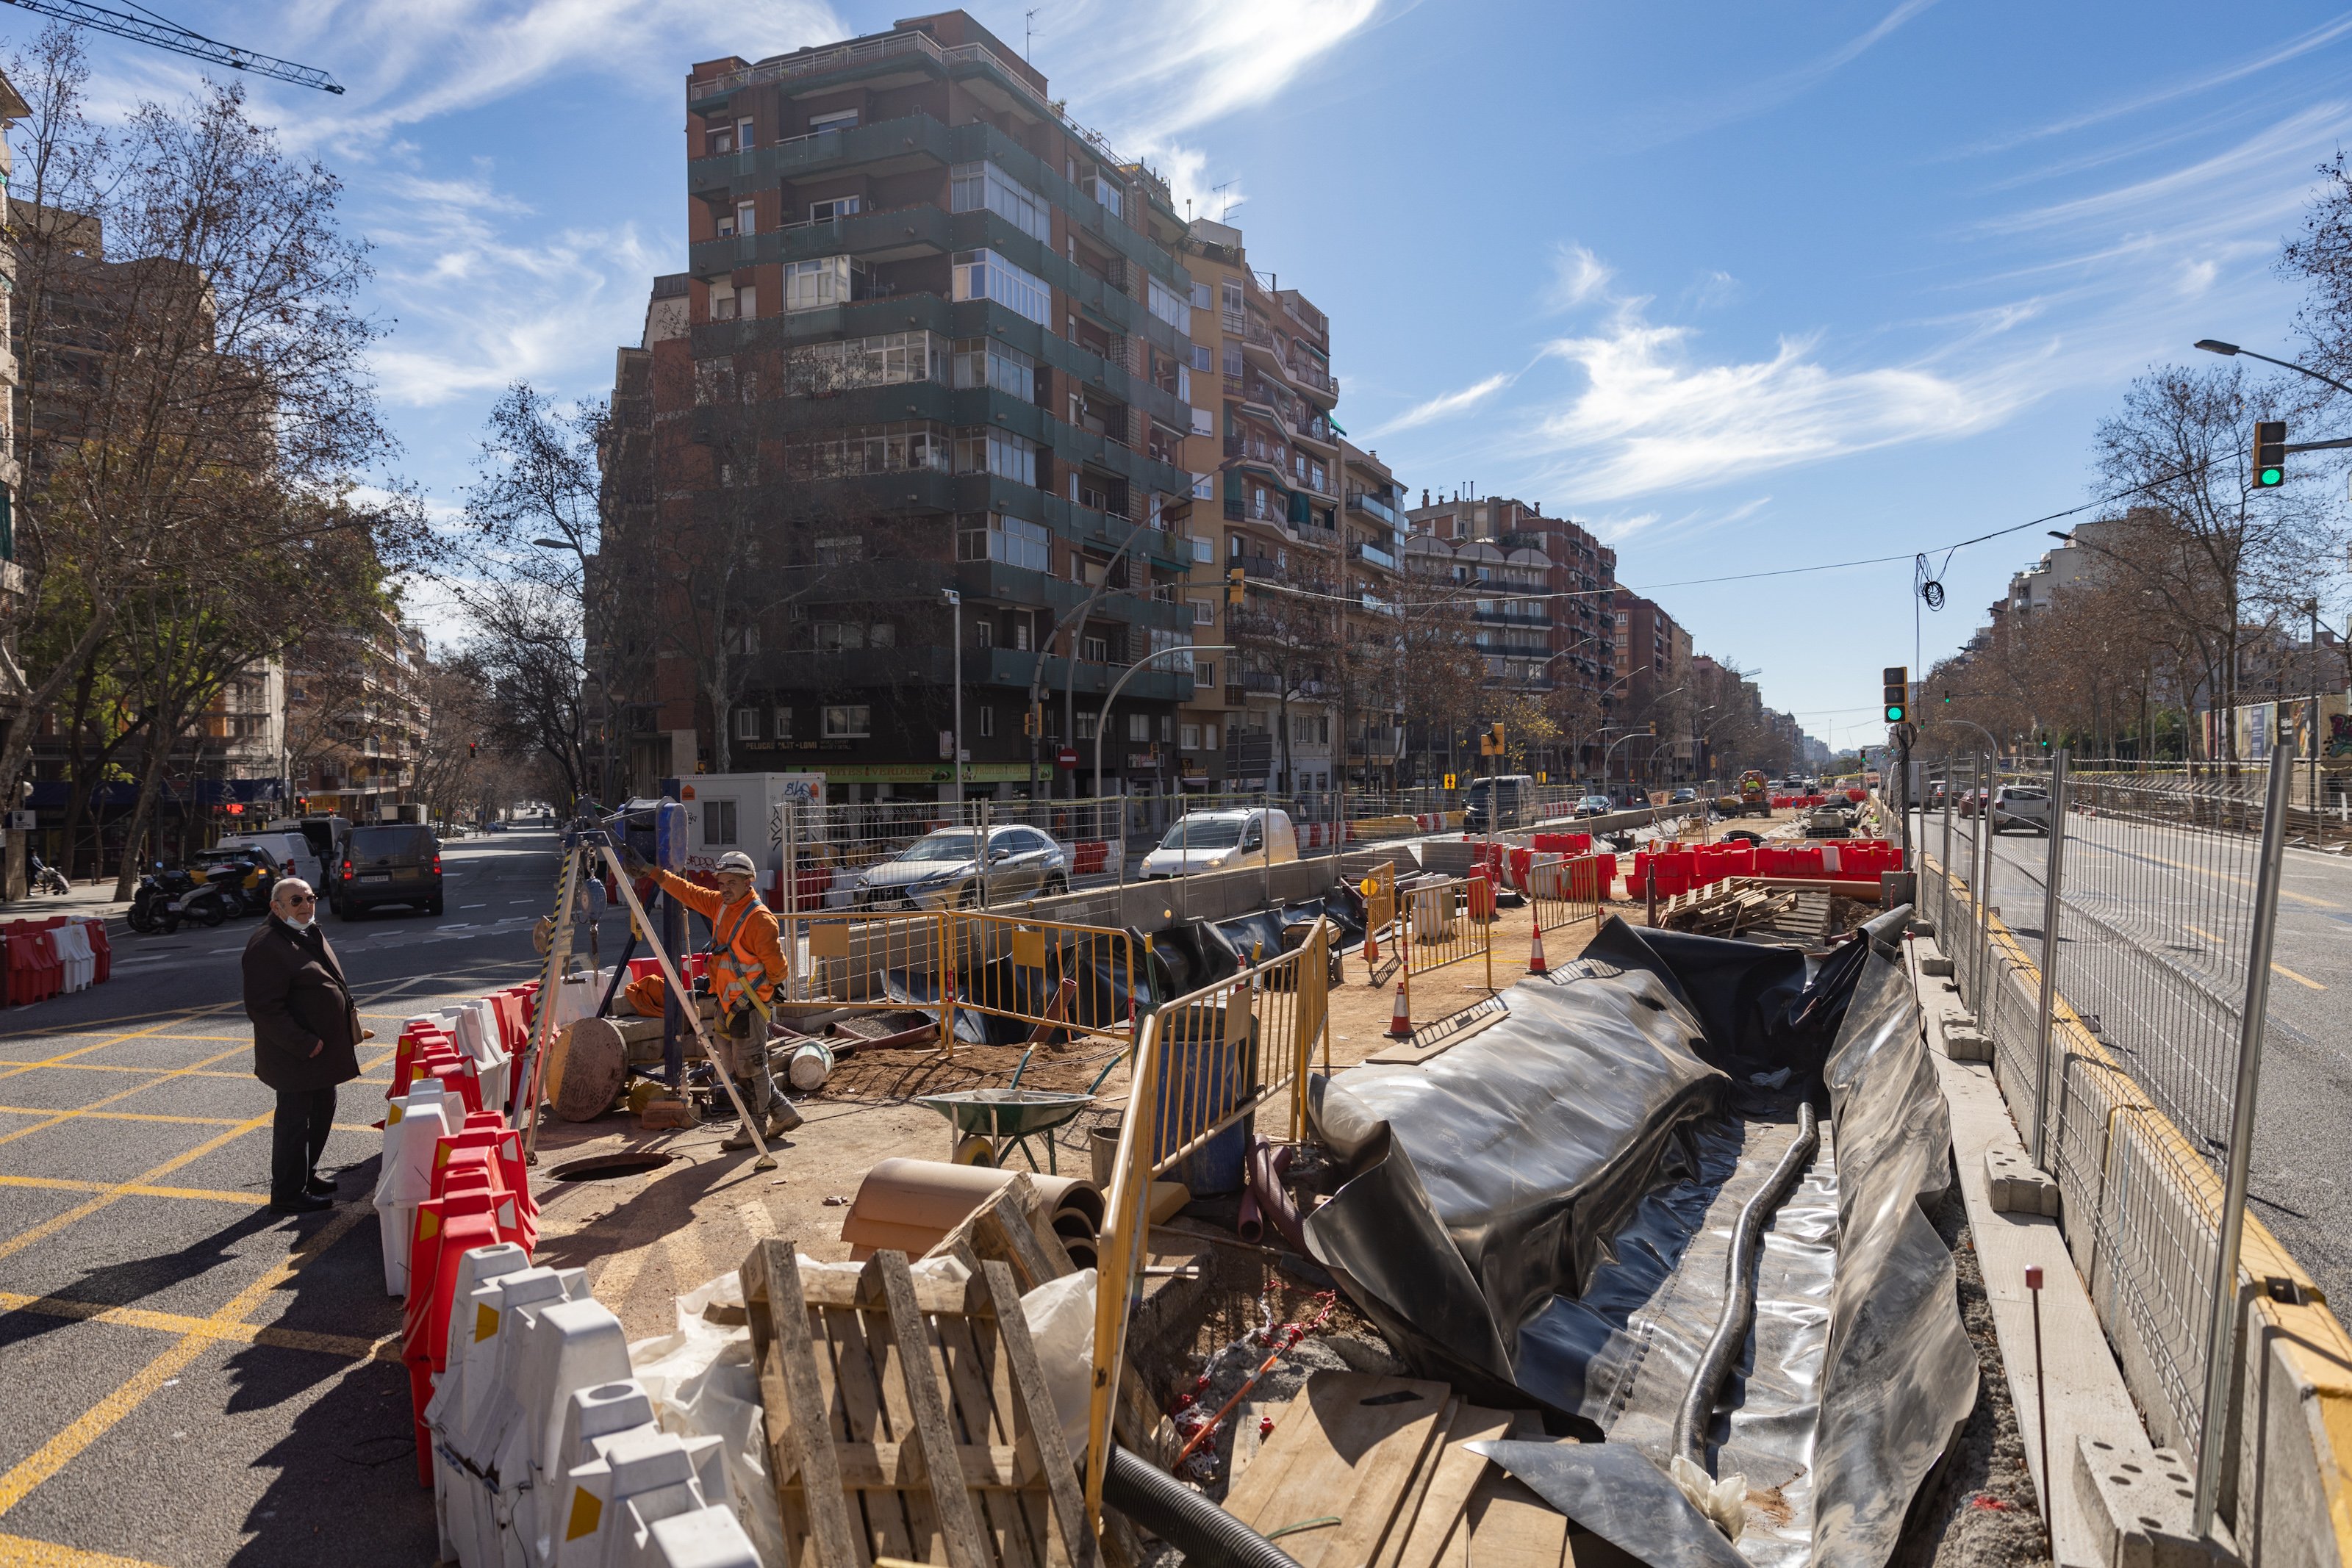 Barcelona en obres: Colau empantanega la ciutat a quinze mesos de les eleccions